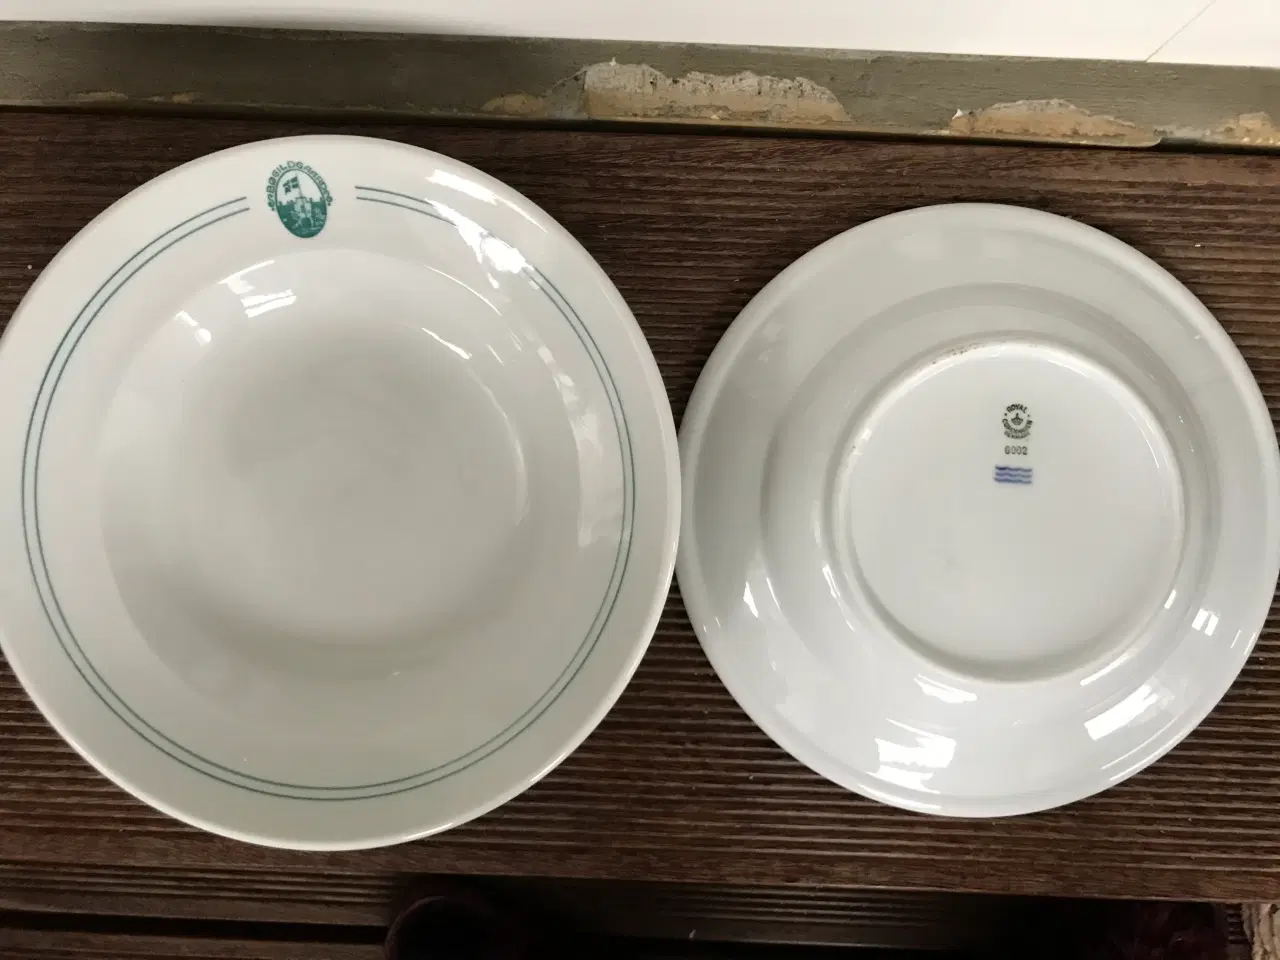 Billede 2 - Hotel porcelæn royal copenhagen tallerkener og fad